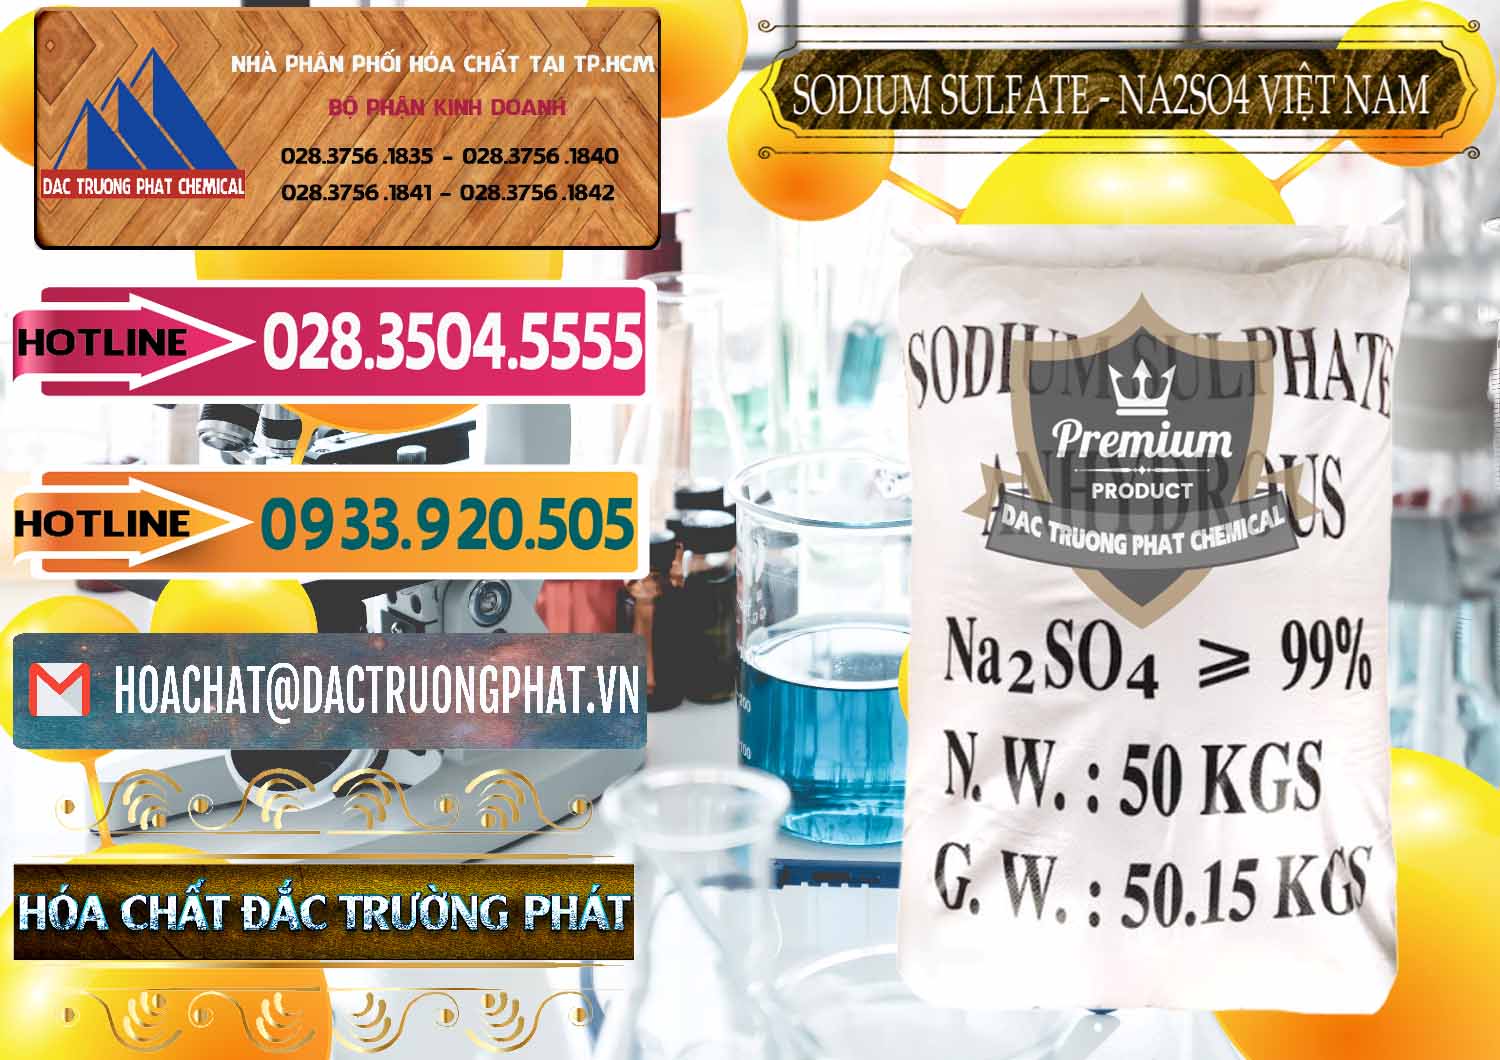 Nơi kinh doanh _ bán Sodium Sulphate - Muối Sunfat Na2SO4 Việt Nam - 0355 - Đơn vị bán & cung cấp hóa chất tại TP.HCM - dactruongphat.vn